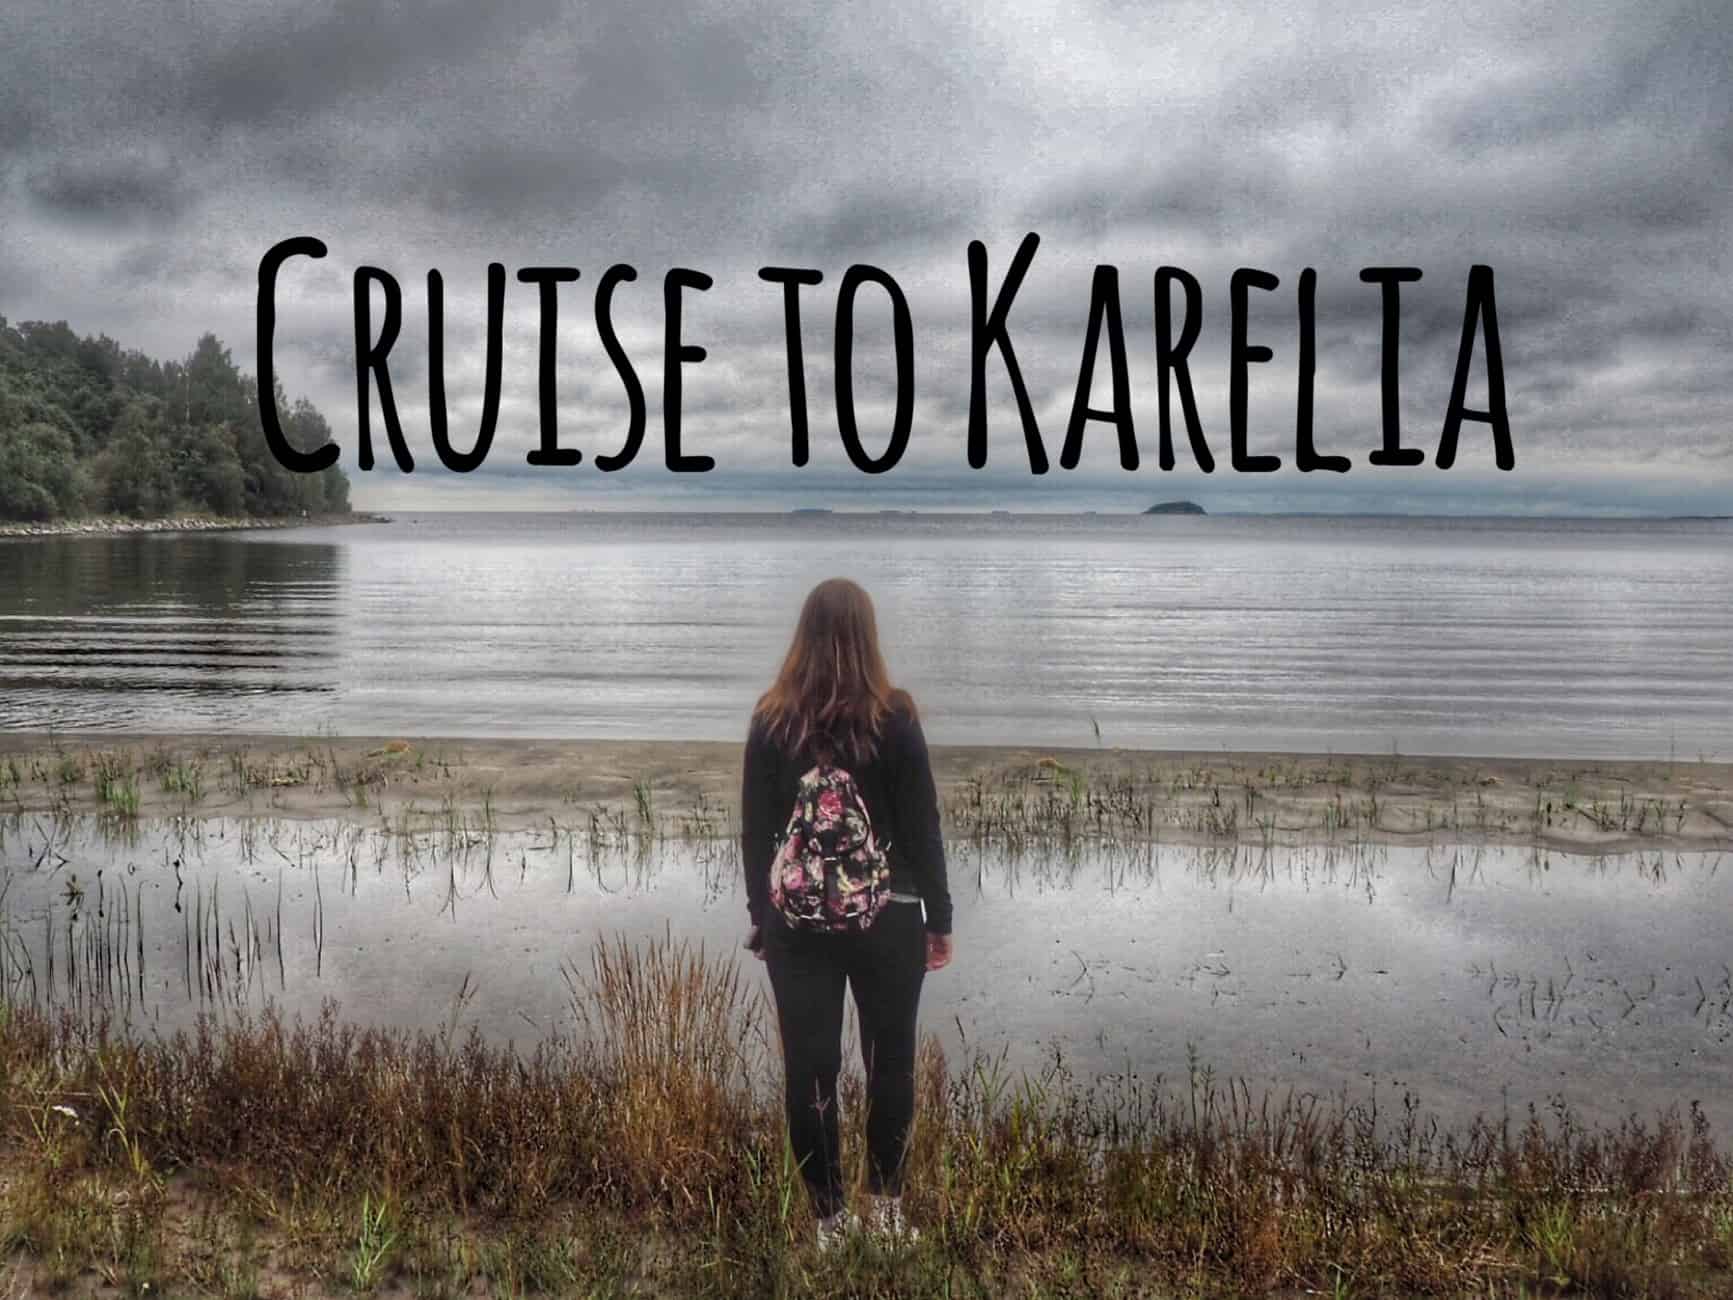 Cruise to Karelia, Ruskeala and Pellotsari